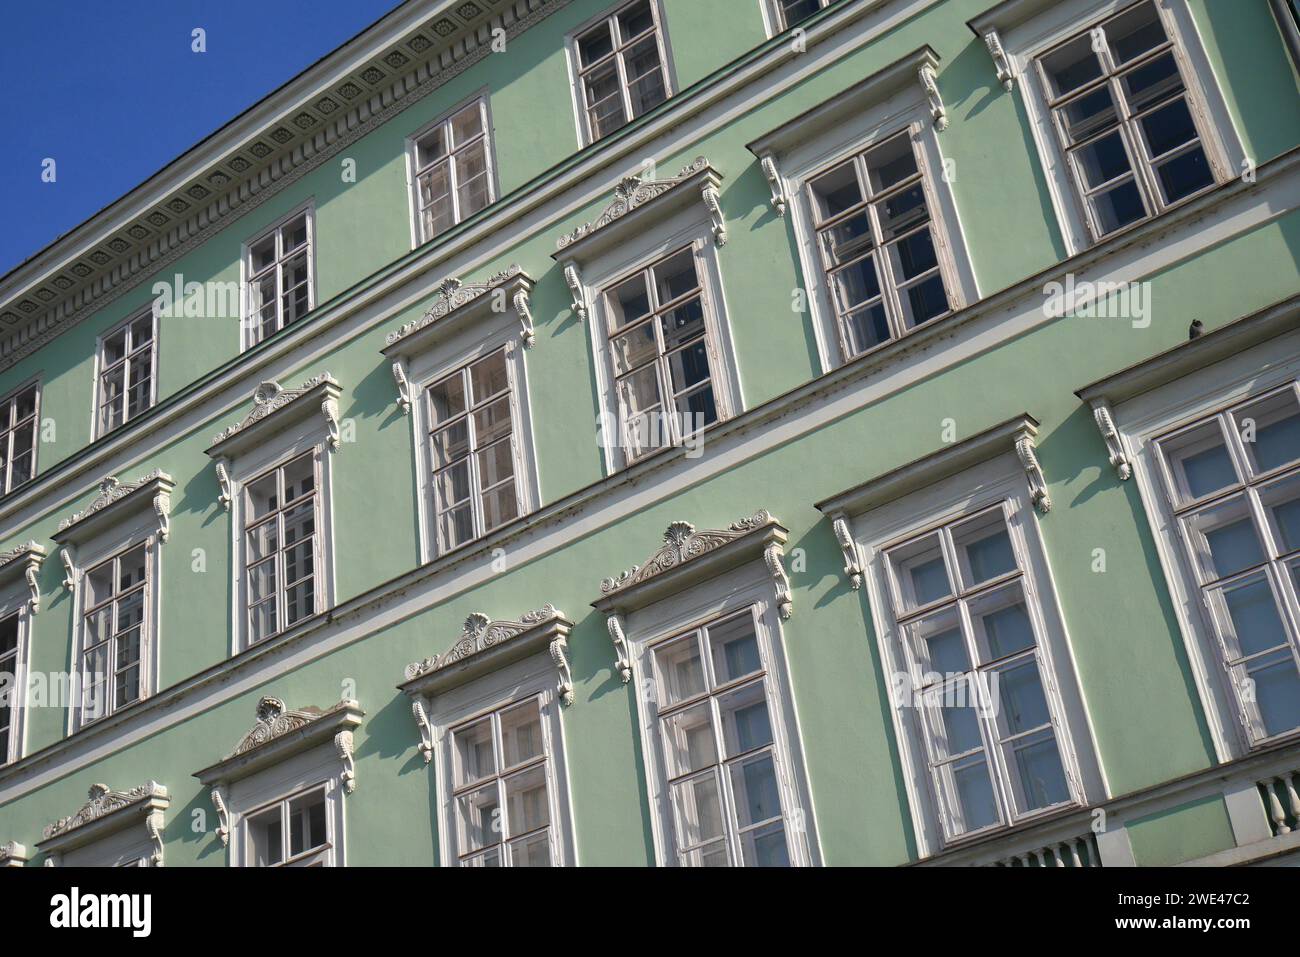 Façade d'un immeuble d'appartements, ciel bleu, surplombant le Danube, Budapest, Hongrie Banque D'Images